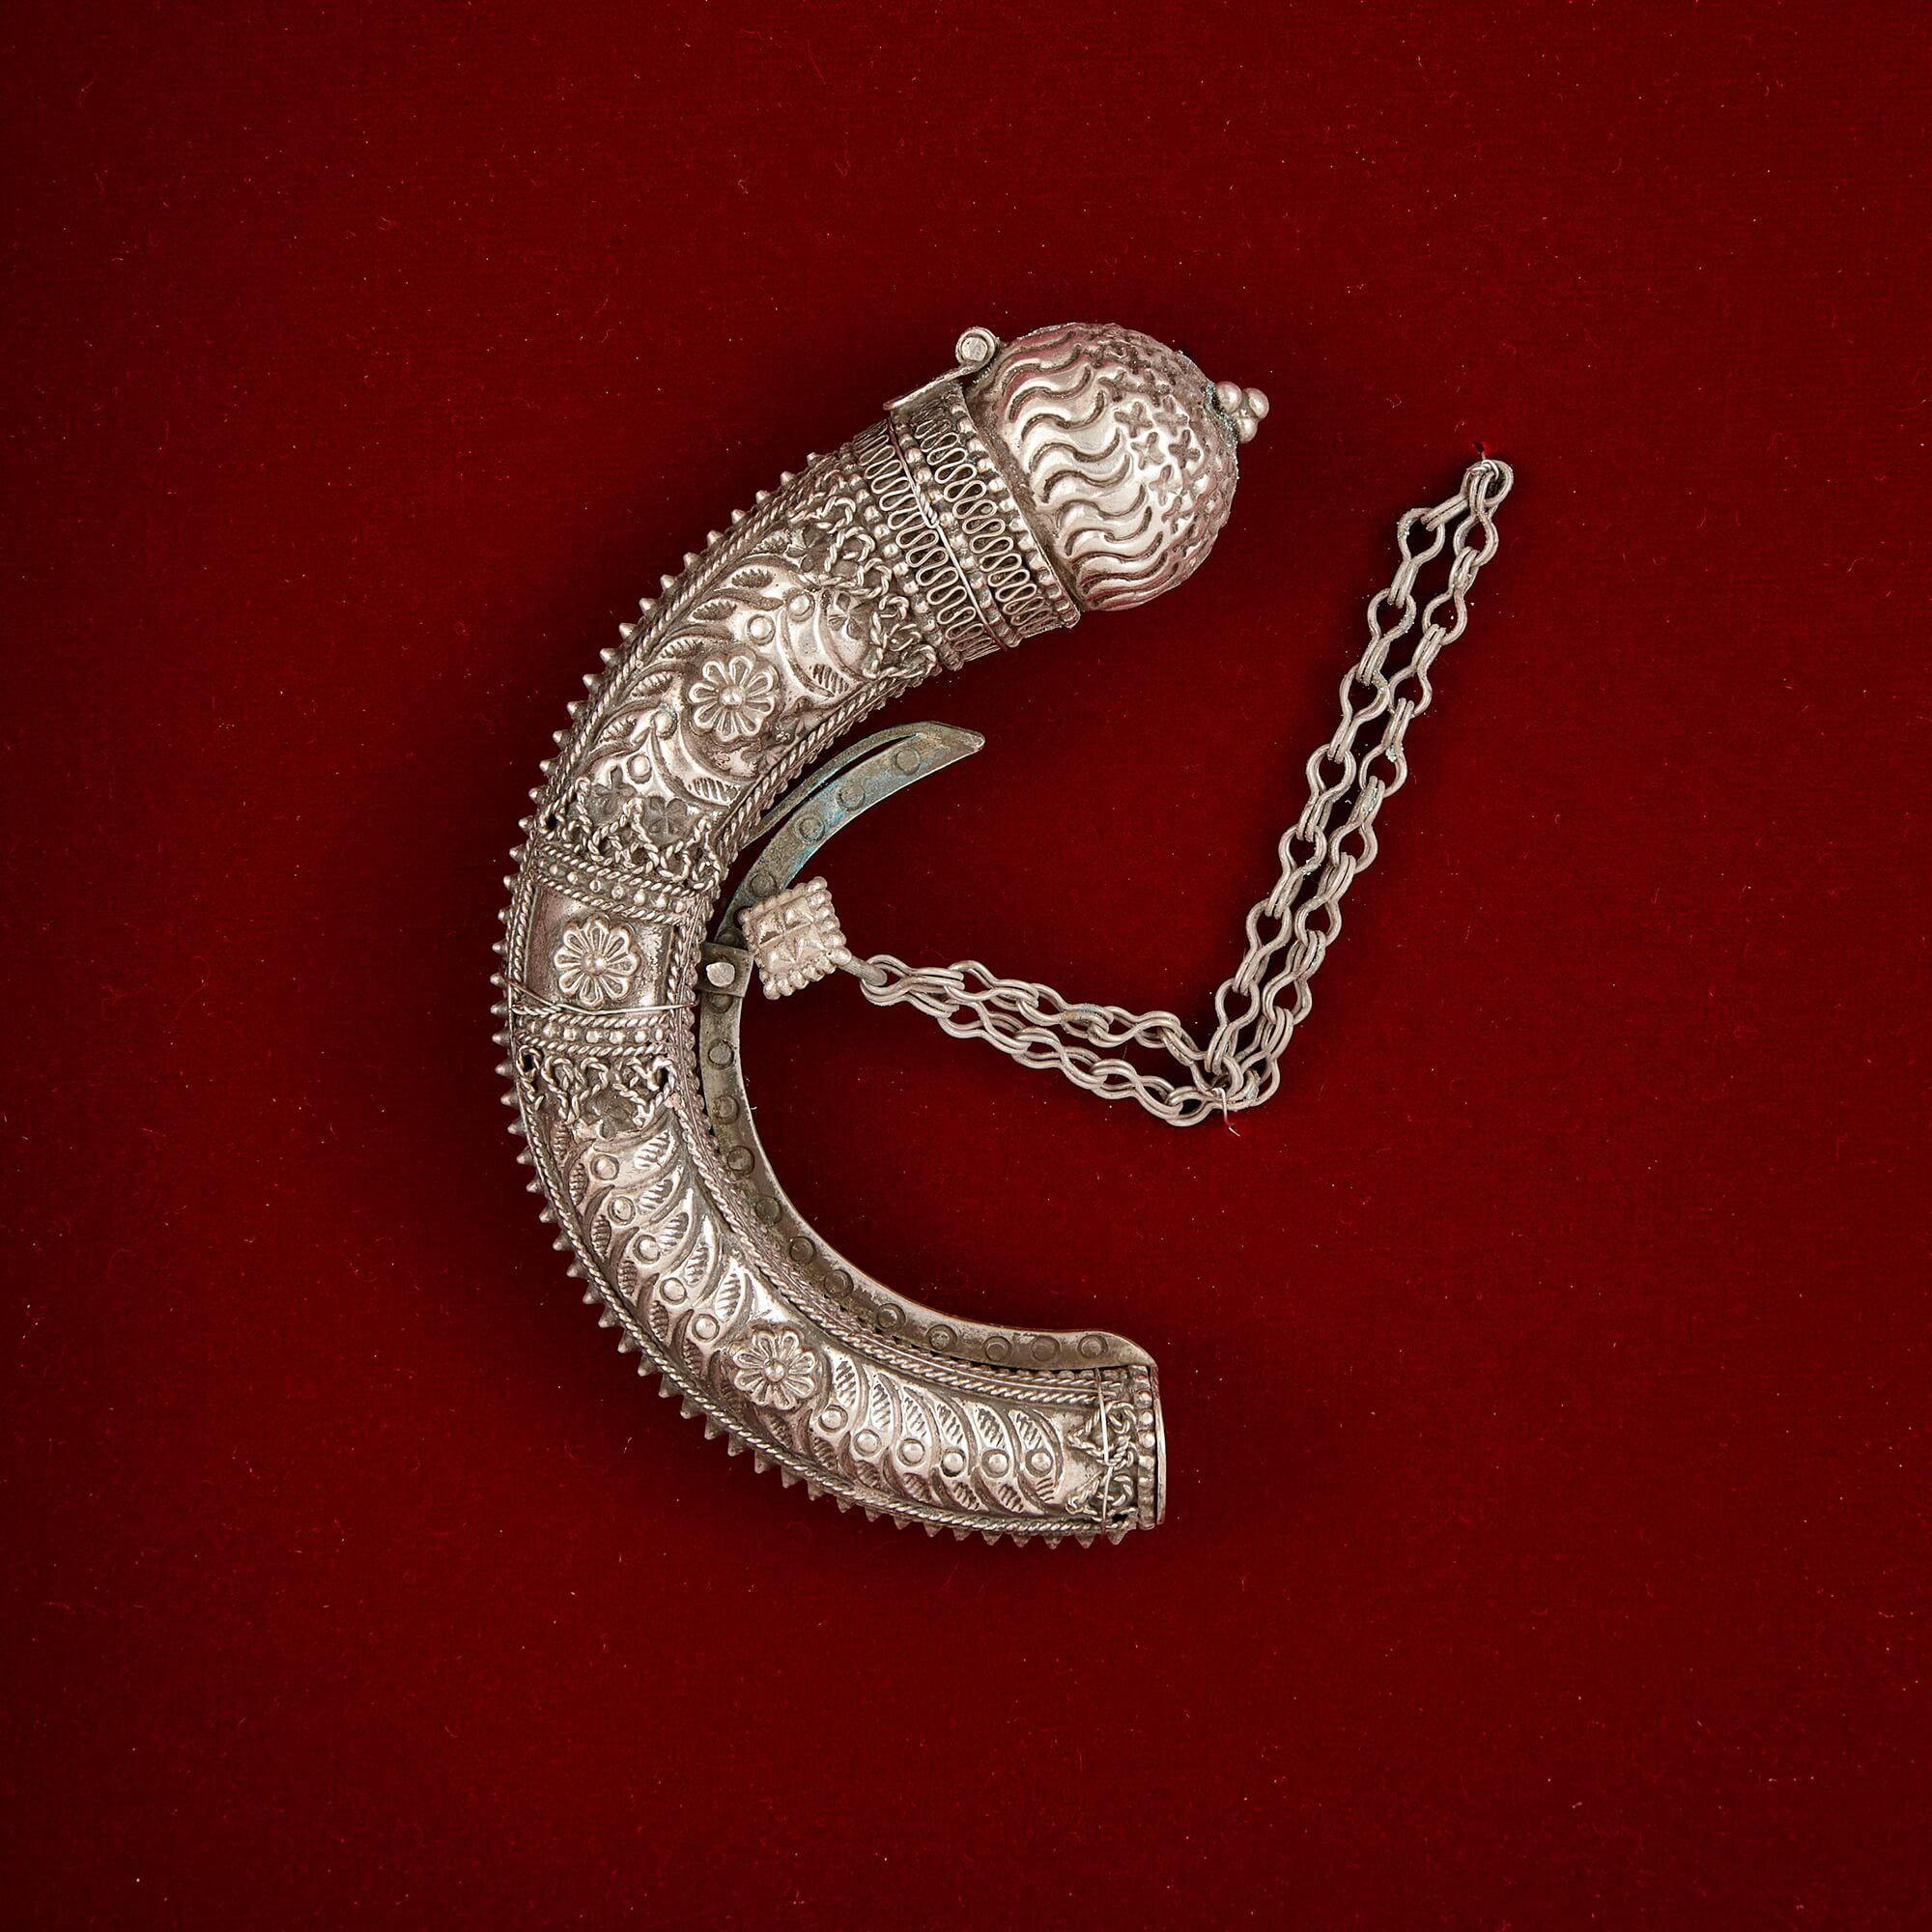 Ein gerahmtes omanisches filigranes Präsentations-Set aus Sterlingsilber und Silber
Oman, Anfang 20. Jahrhundert
Maße: Höhe 39,5cm, Breite 46cm, Tiefe 5cm

Dieses omanische Silbergeschenk besteht aus einem Dolch, einem Paar Ohrringen, einem